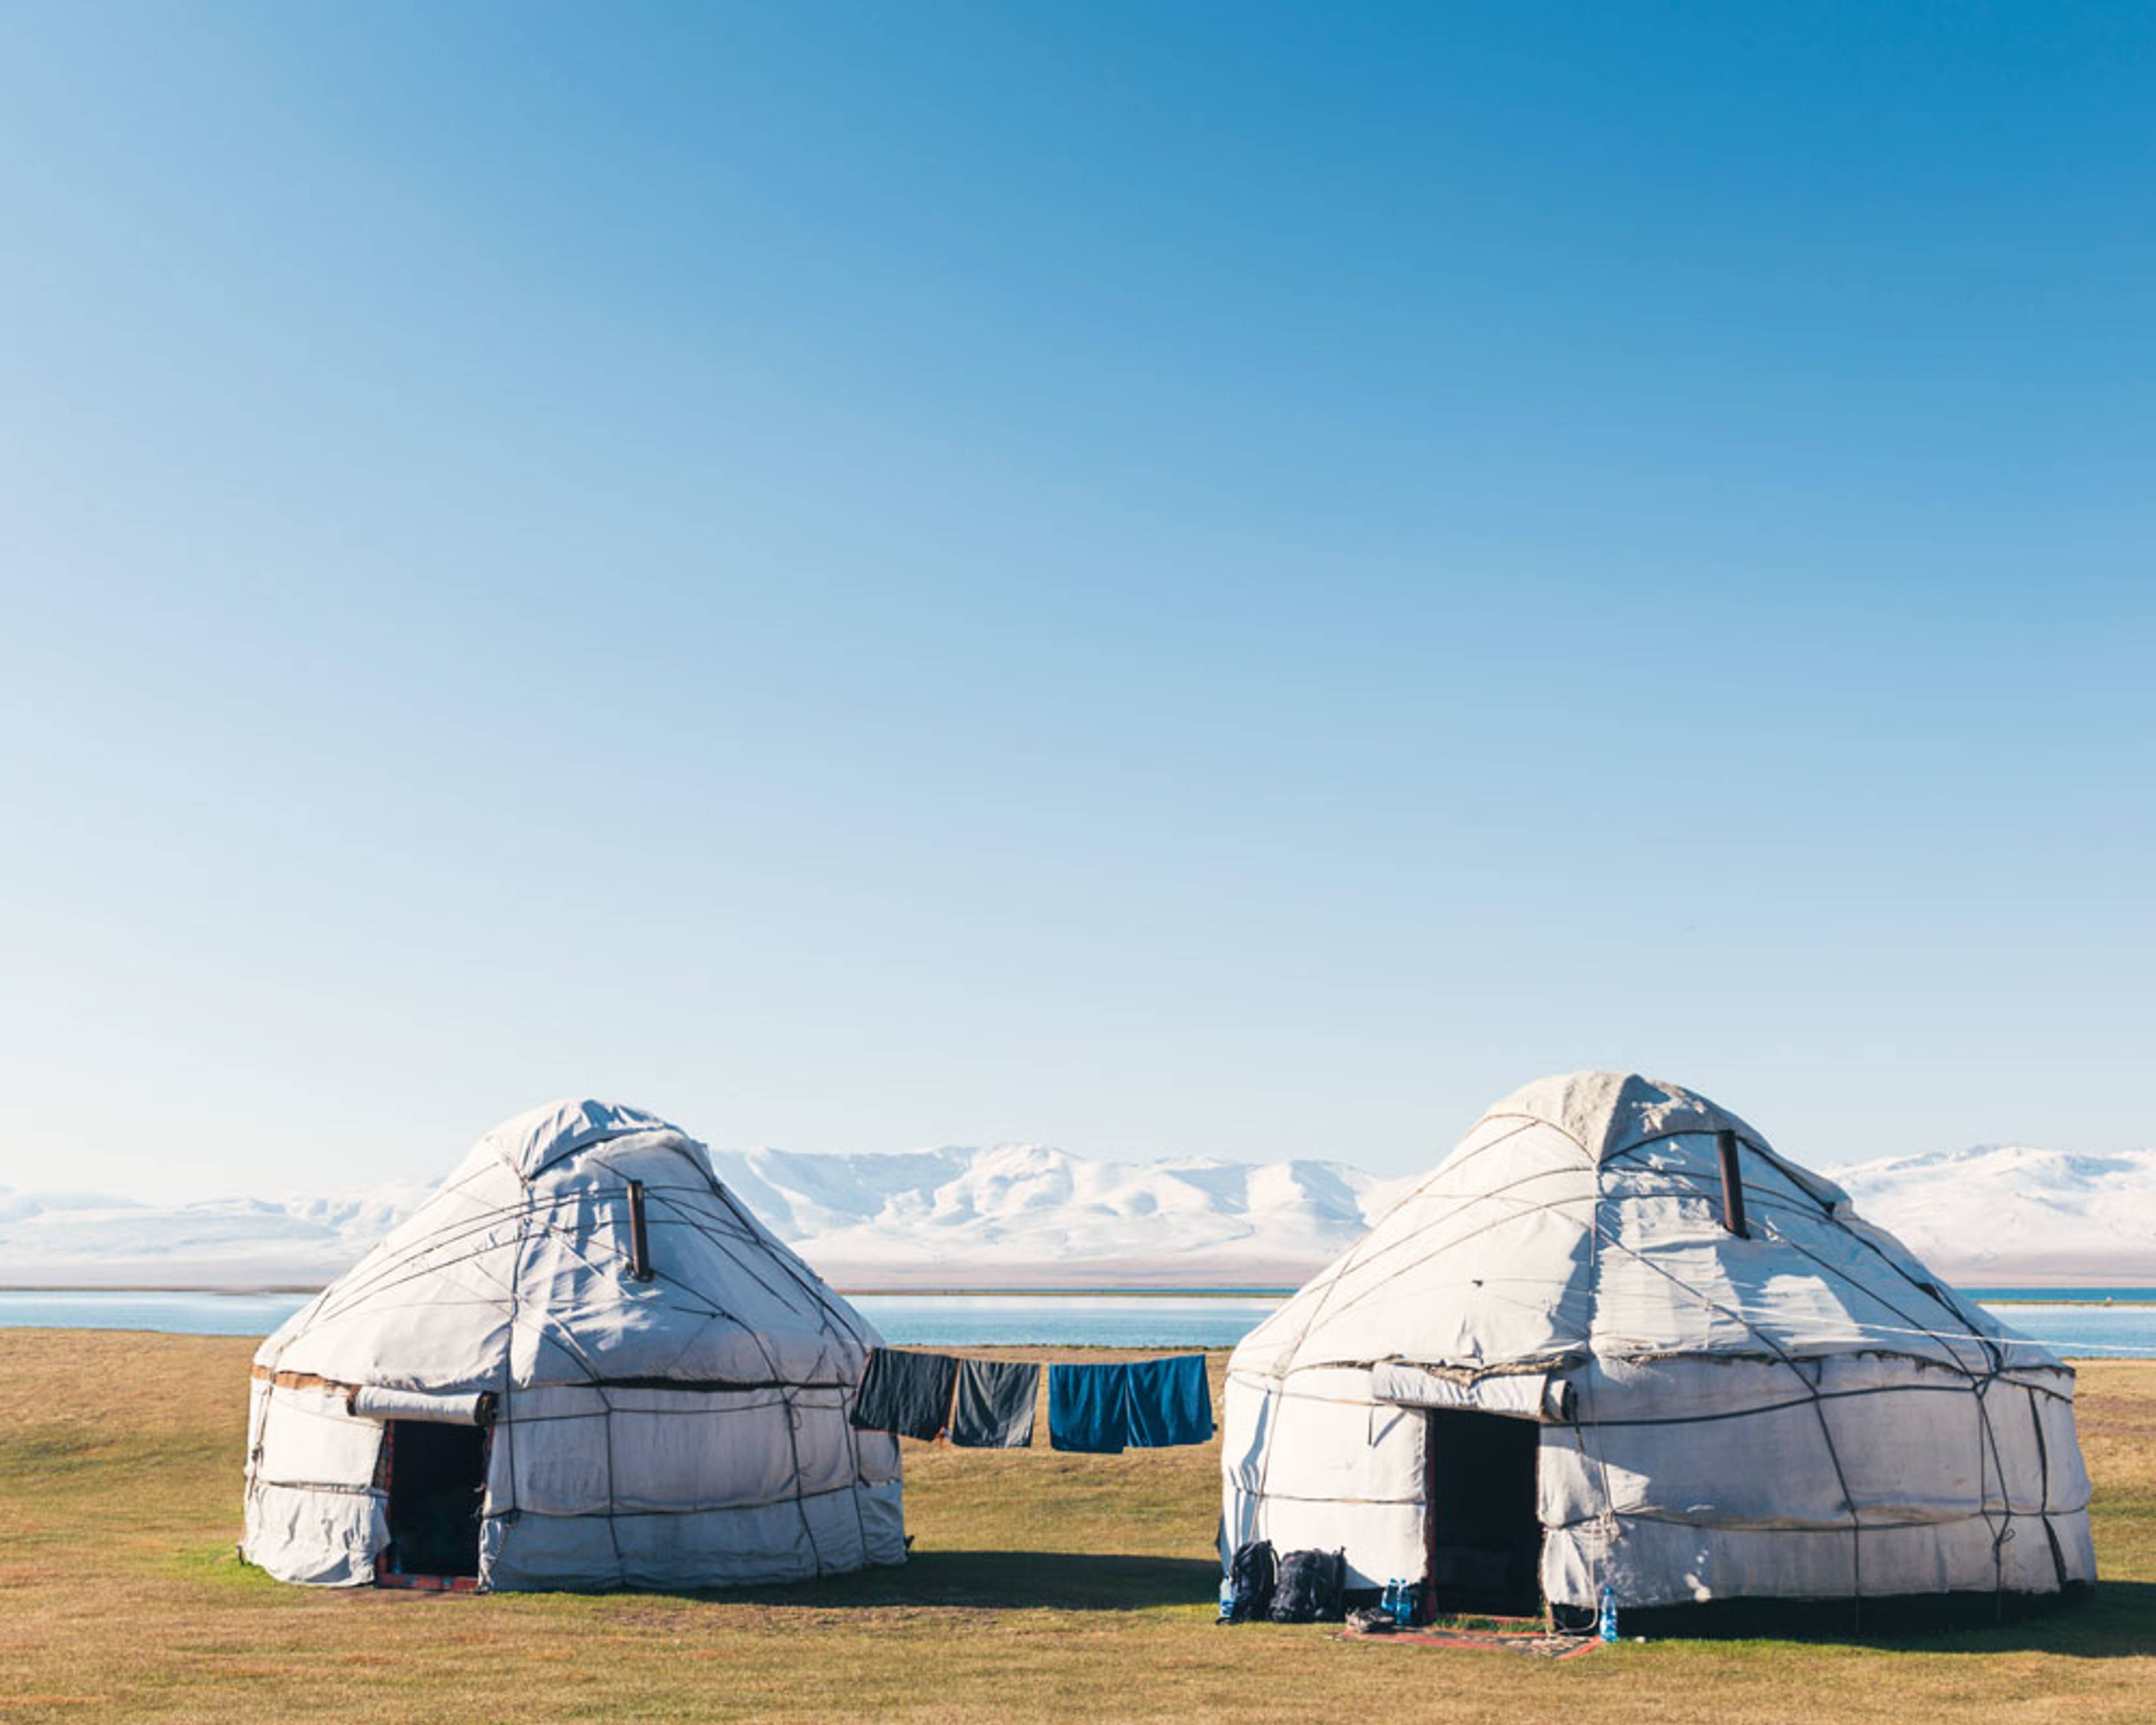 Zwei Wochen nach Kirgisistan - Reise jetzt individuell gestalten